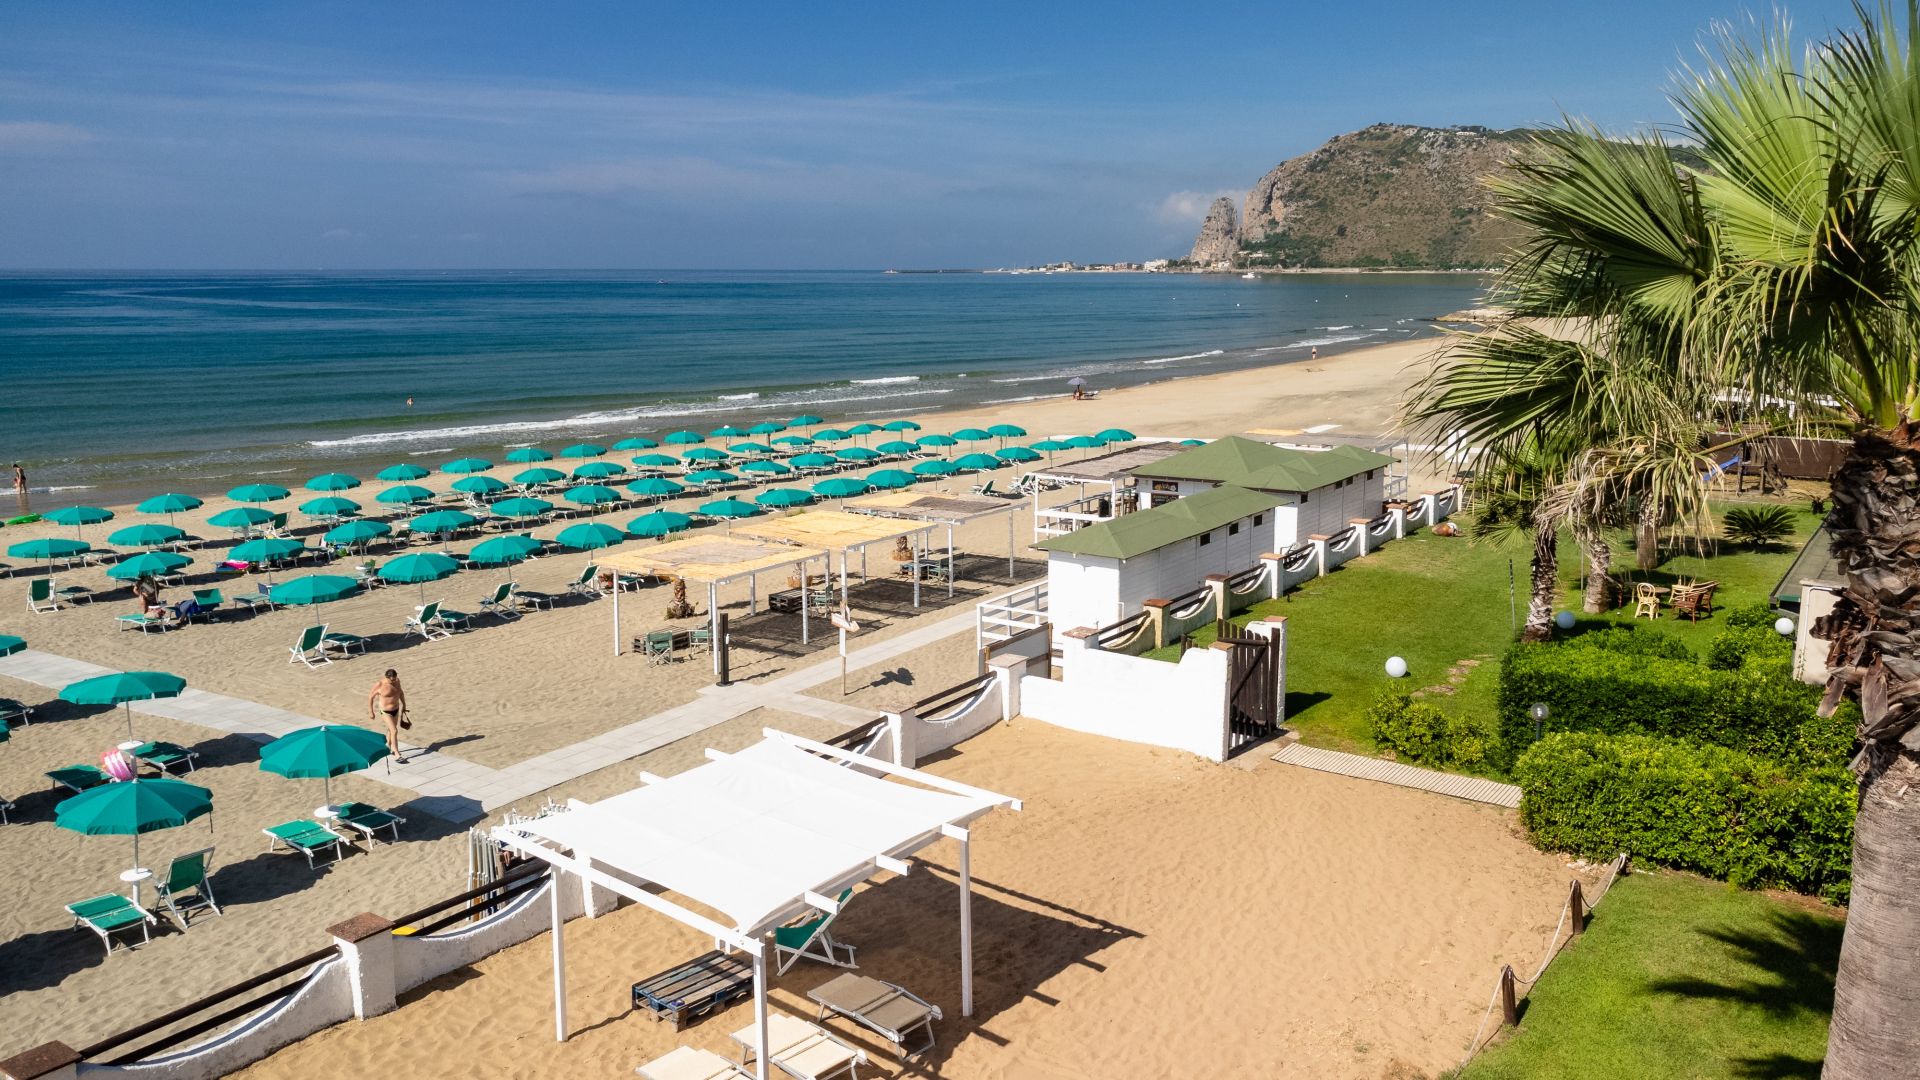 Hotel Villa dei Principi - Spiaggia - 0019 (1)